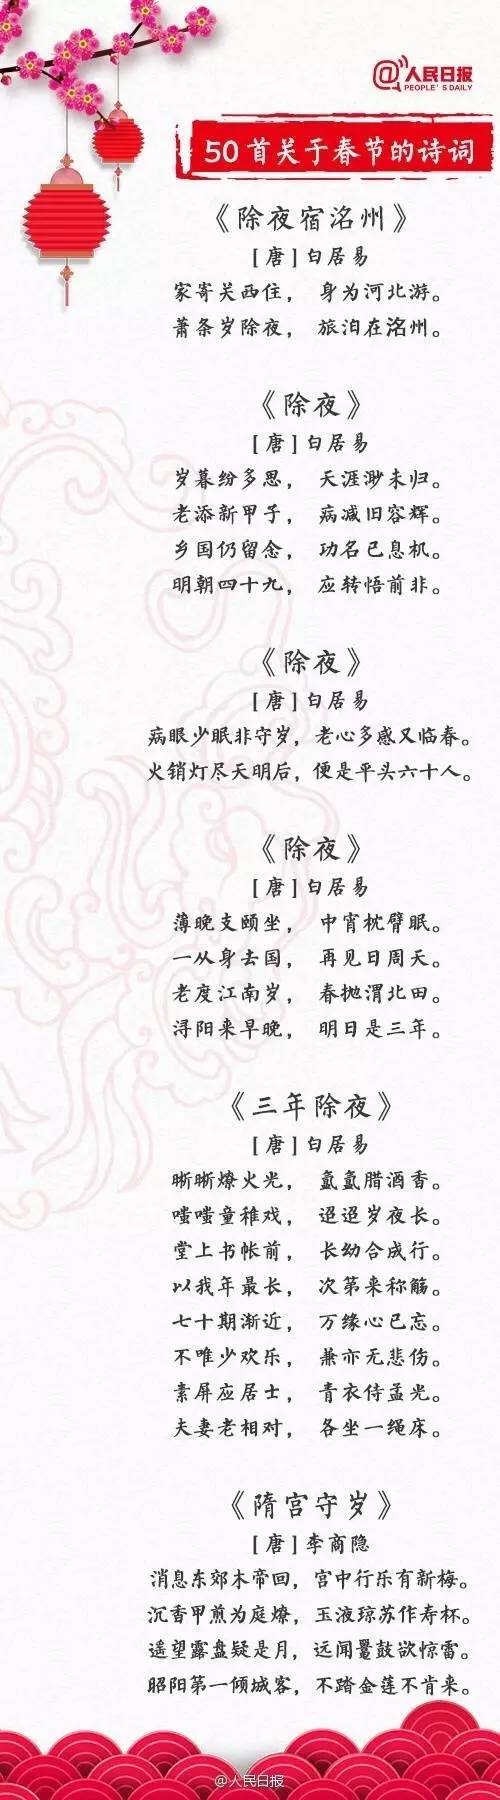 春节诗歌